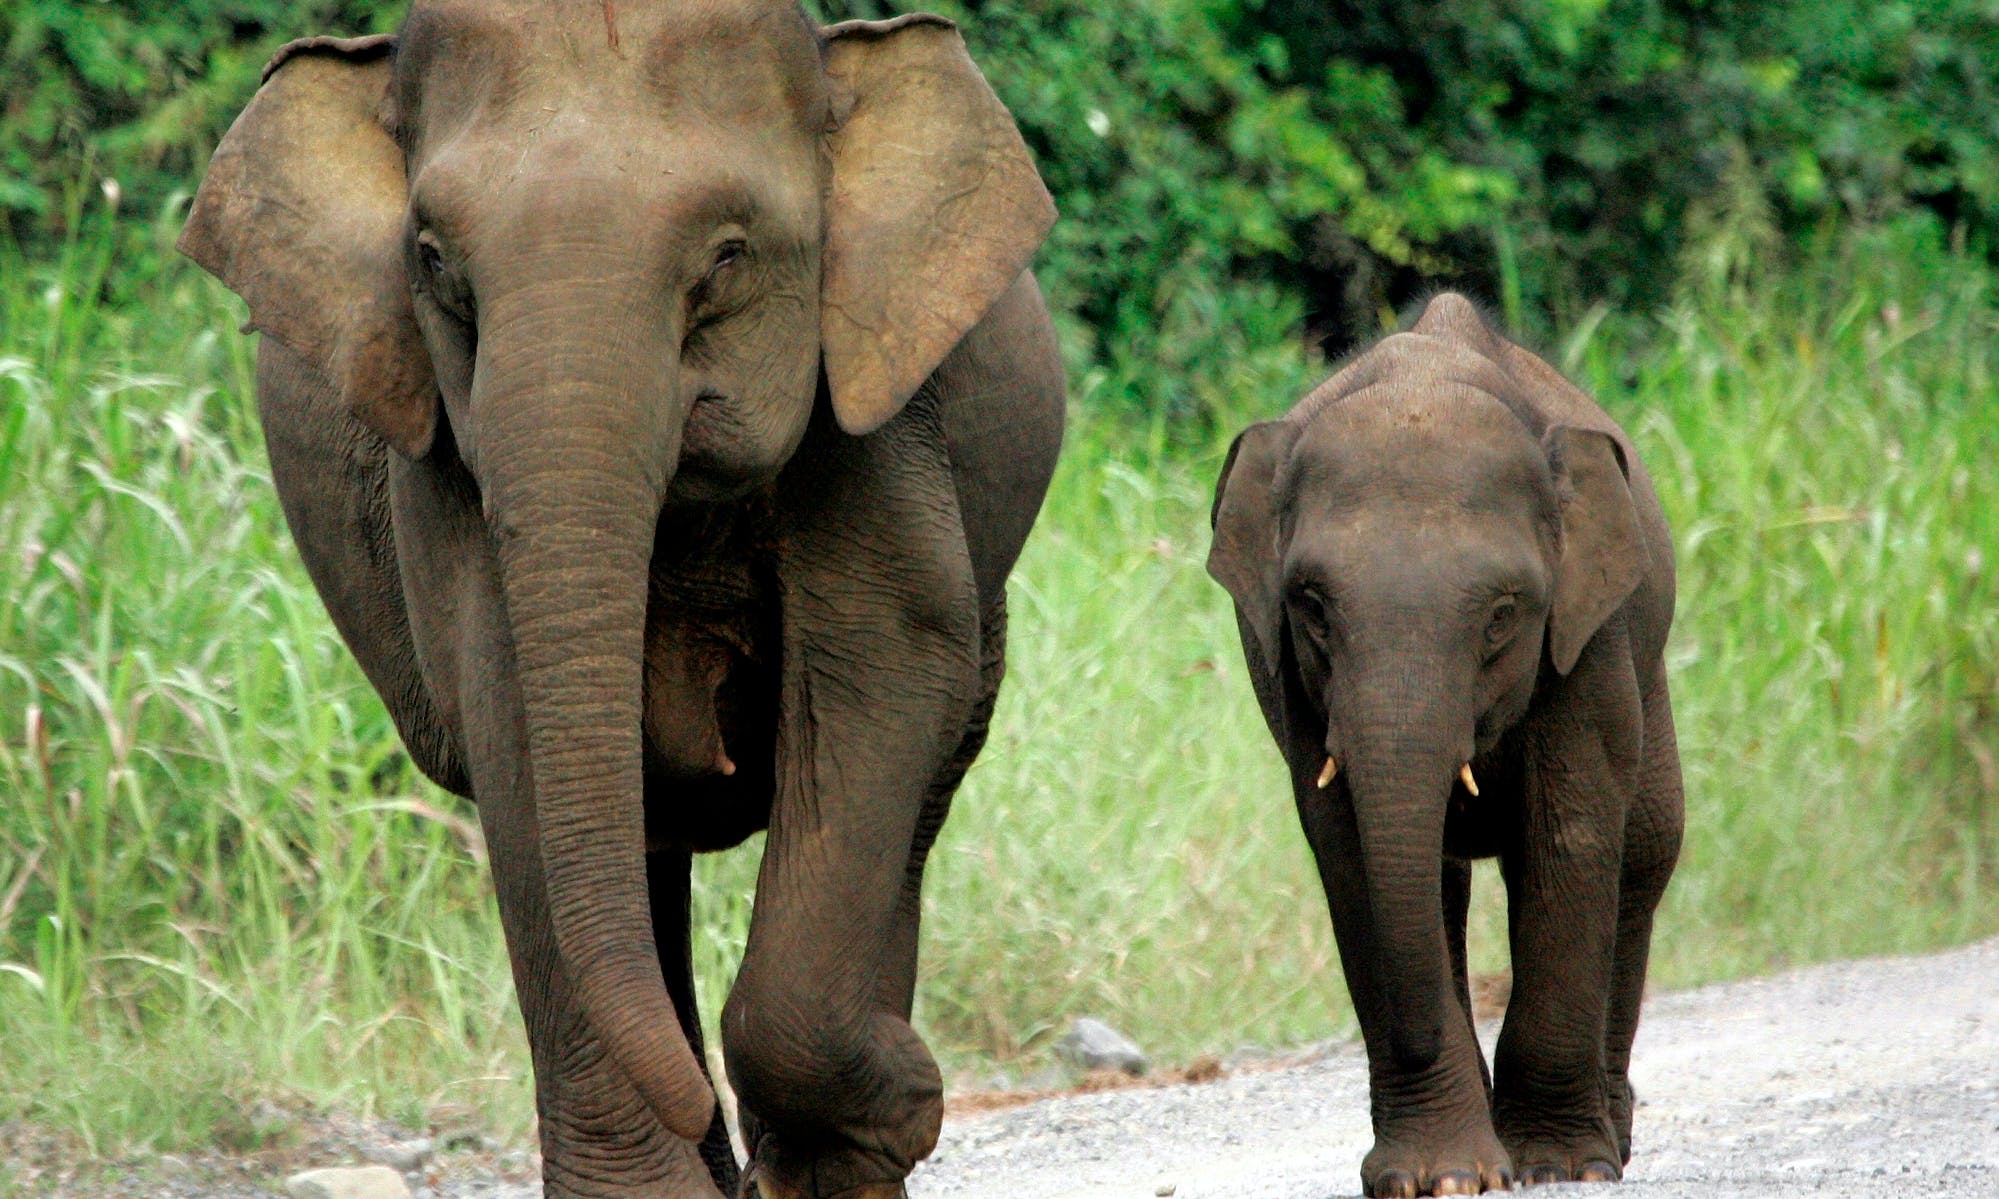 棲息地消失、盜獵者追捕　婆羅洲侏儒象死亡數激增